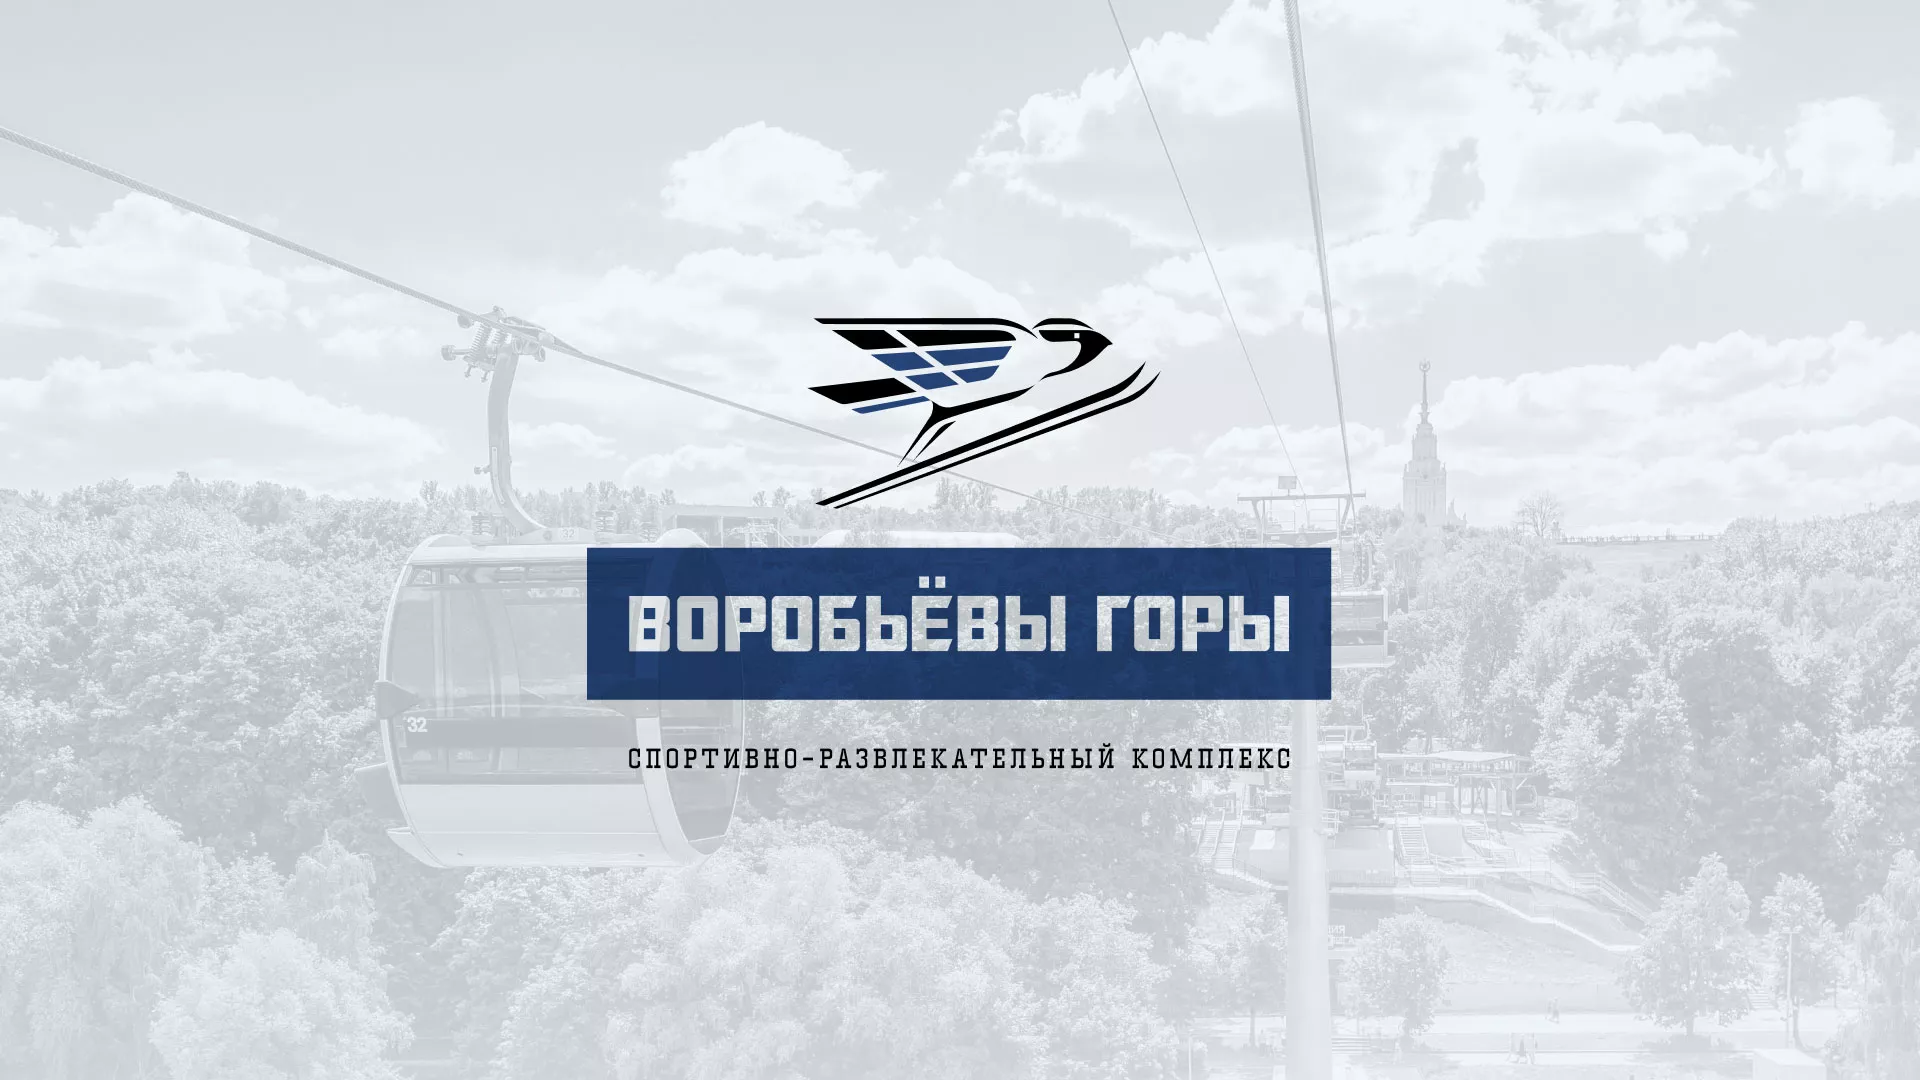 Разработка сайта в Вытегре для спортивно-развлекательного комплекса «Воробьёвы горы»